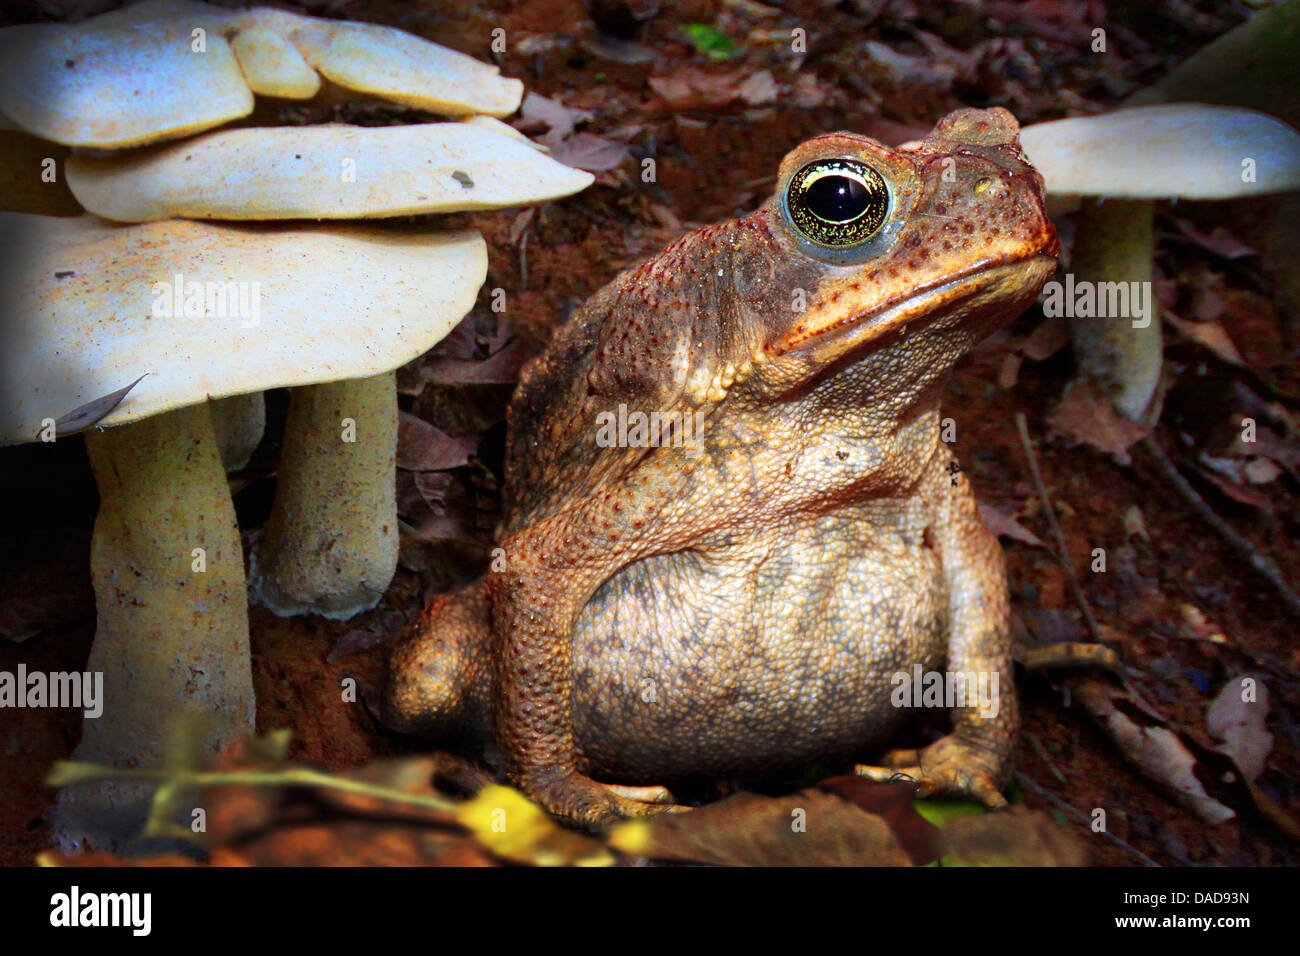 Il rospo gigante, Marine, il Rospo Rospo di canna, sud americana Neotropical toad (Bufo marinus, Rhinella marina), seduta sul terreno forestale tra i funghi, Costa Rica Foto Stock